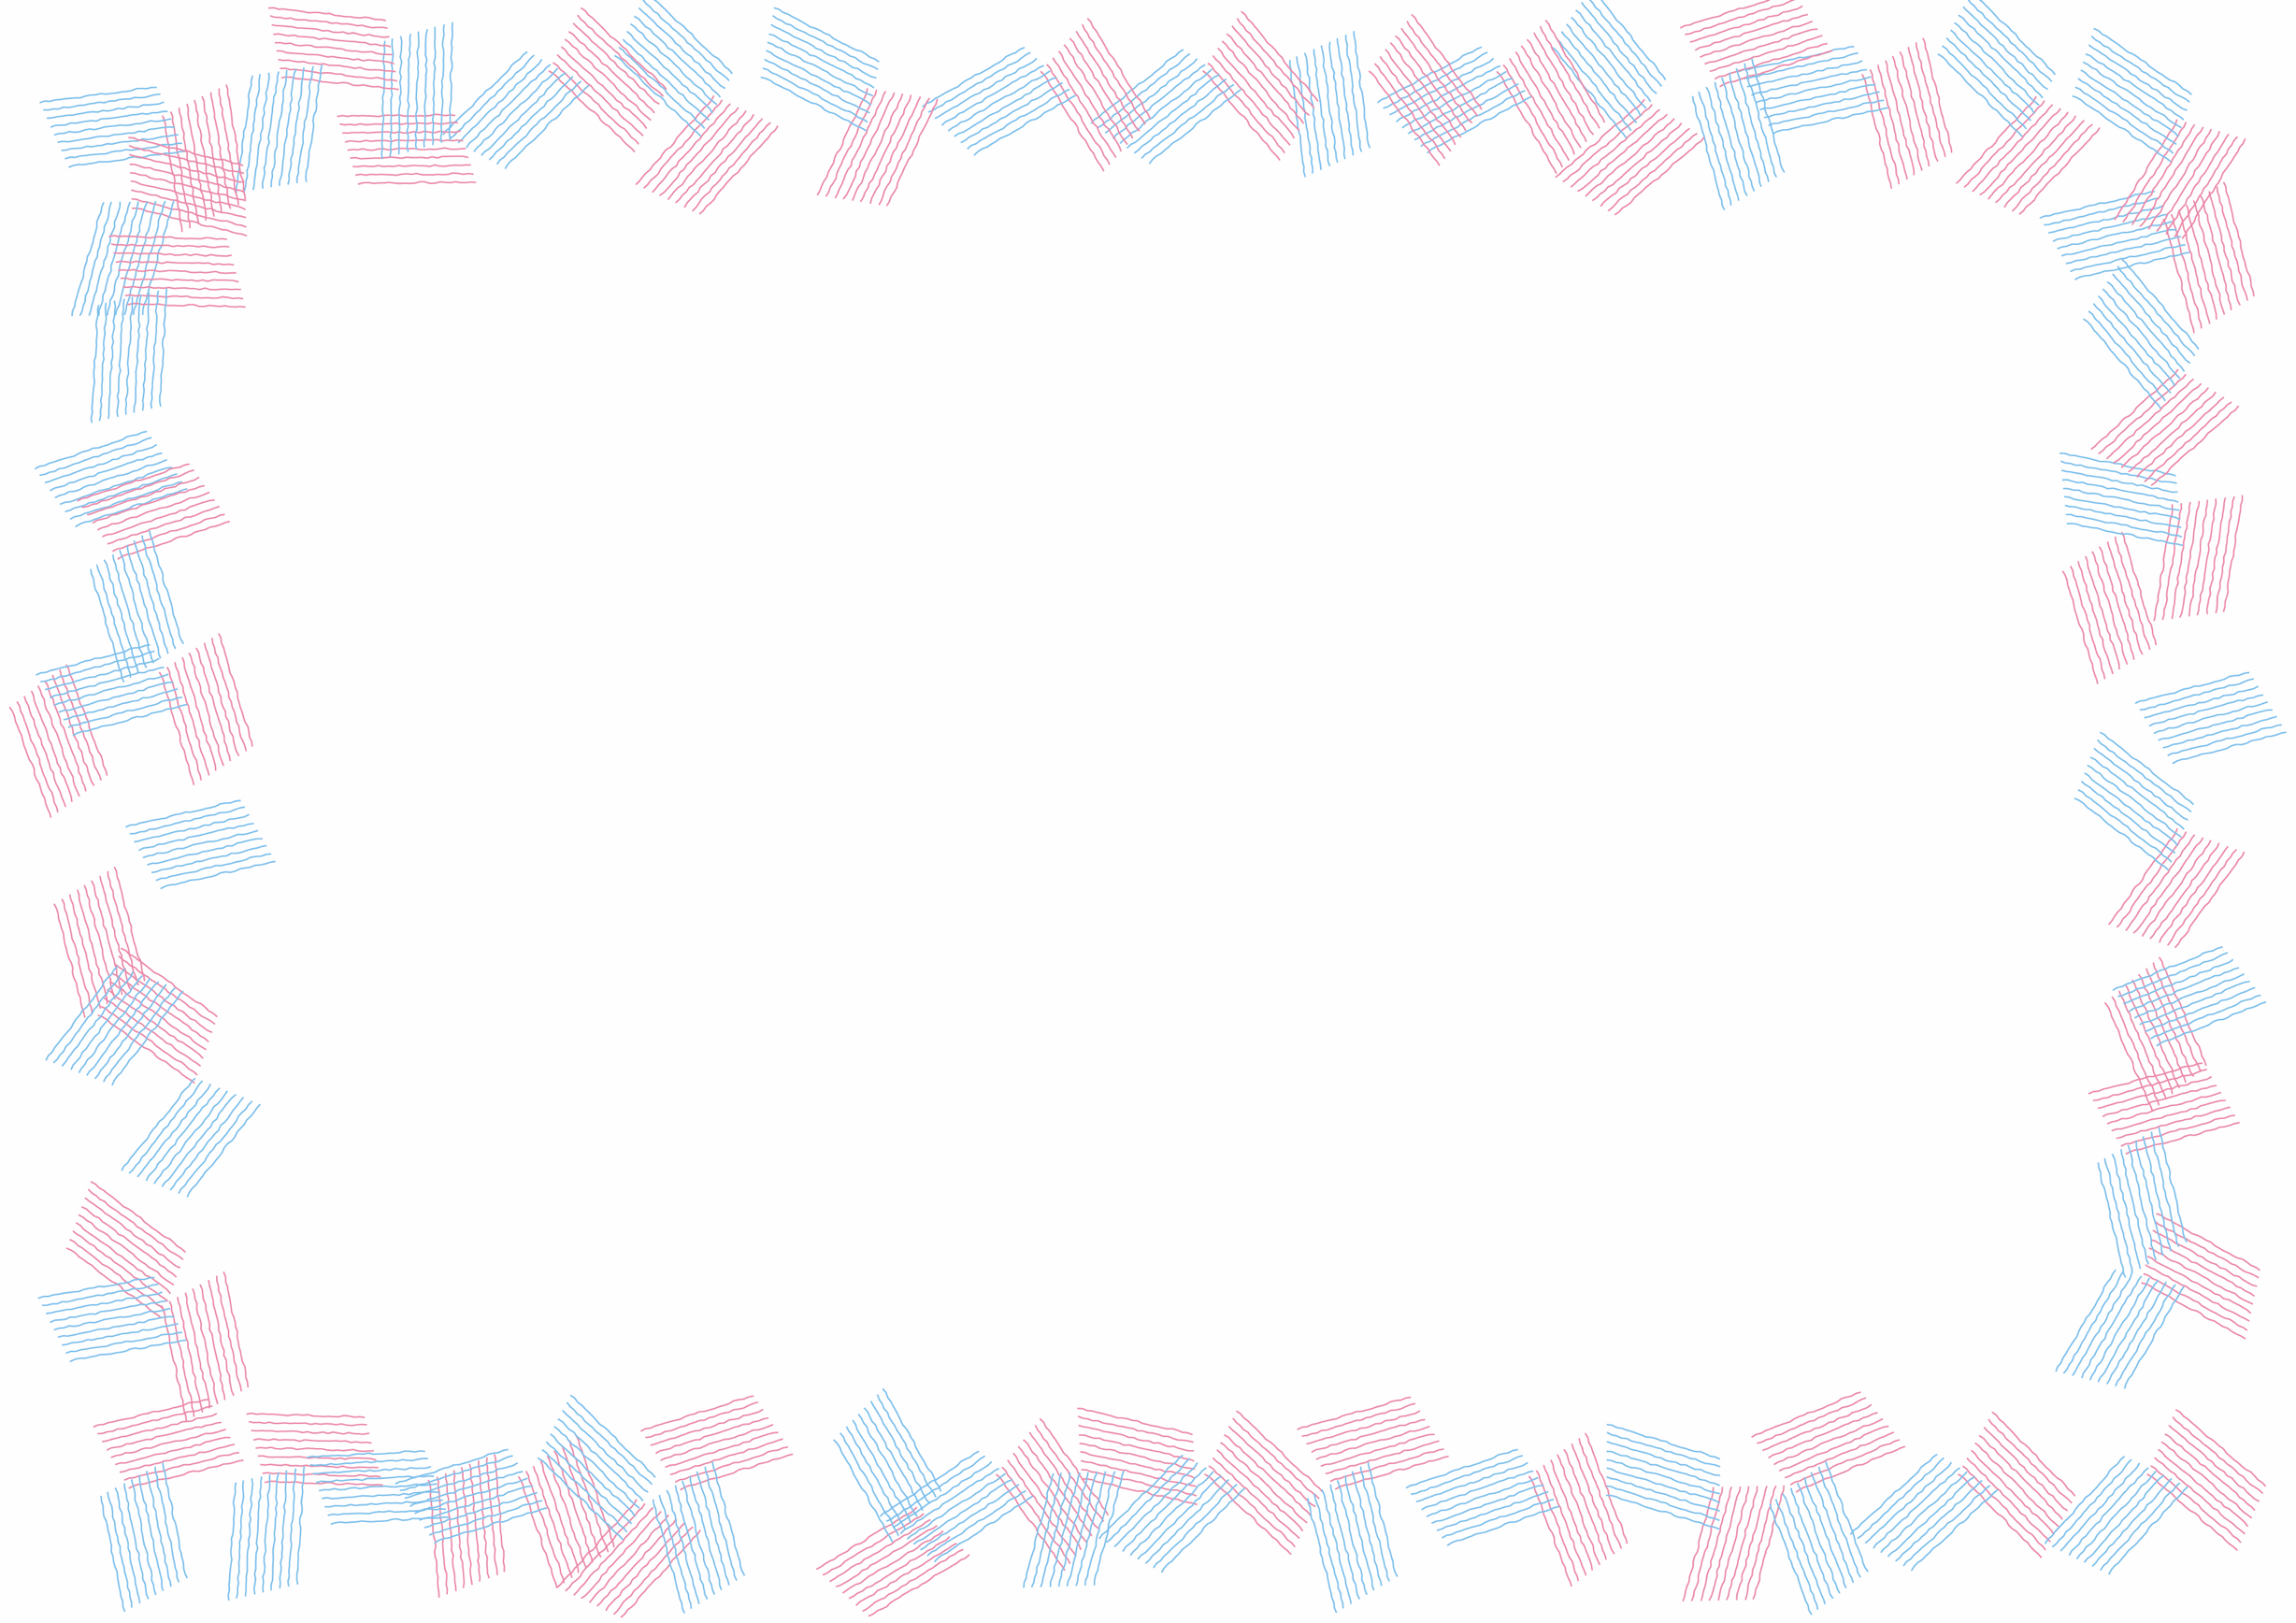 可愛いイラスト無料 背景 シンプル フレーム ピンク色 水色 Free Illustration Background Simple Frame Pink Light Blue 公式 イラストダウンロード